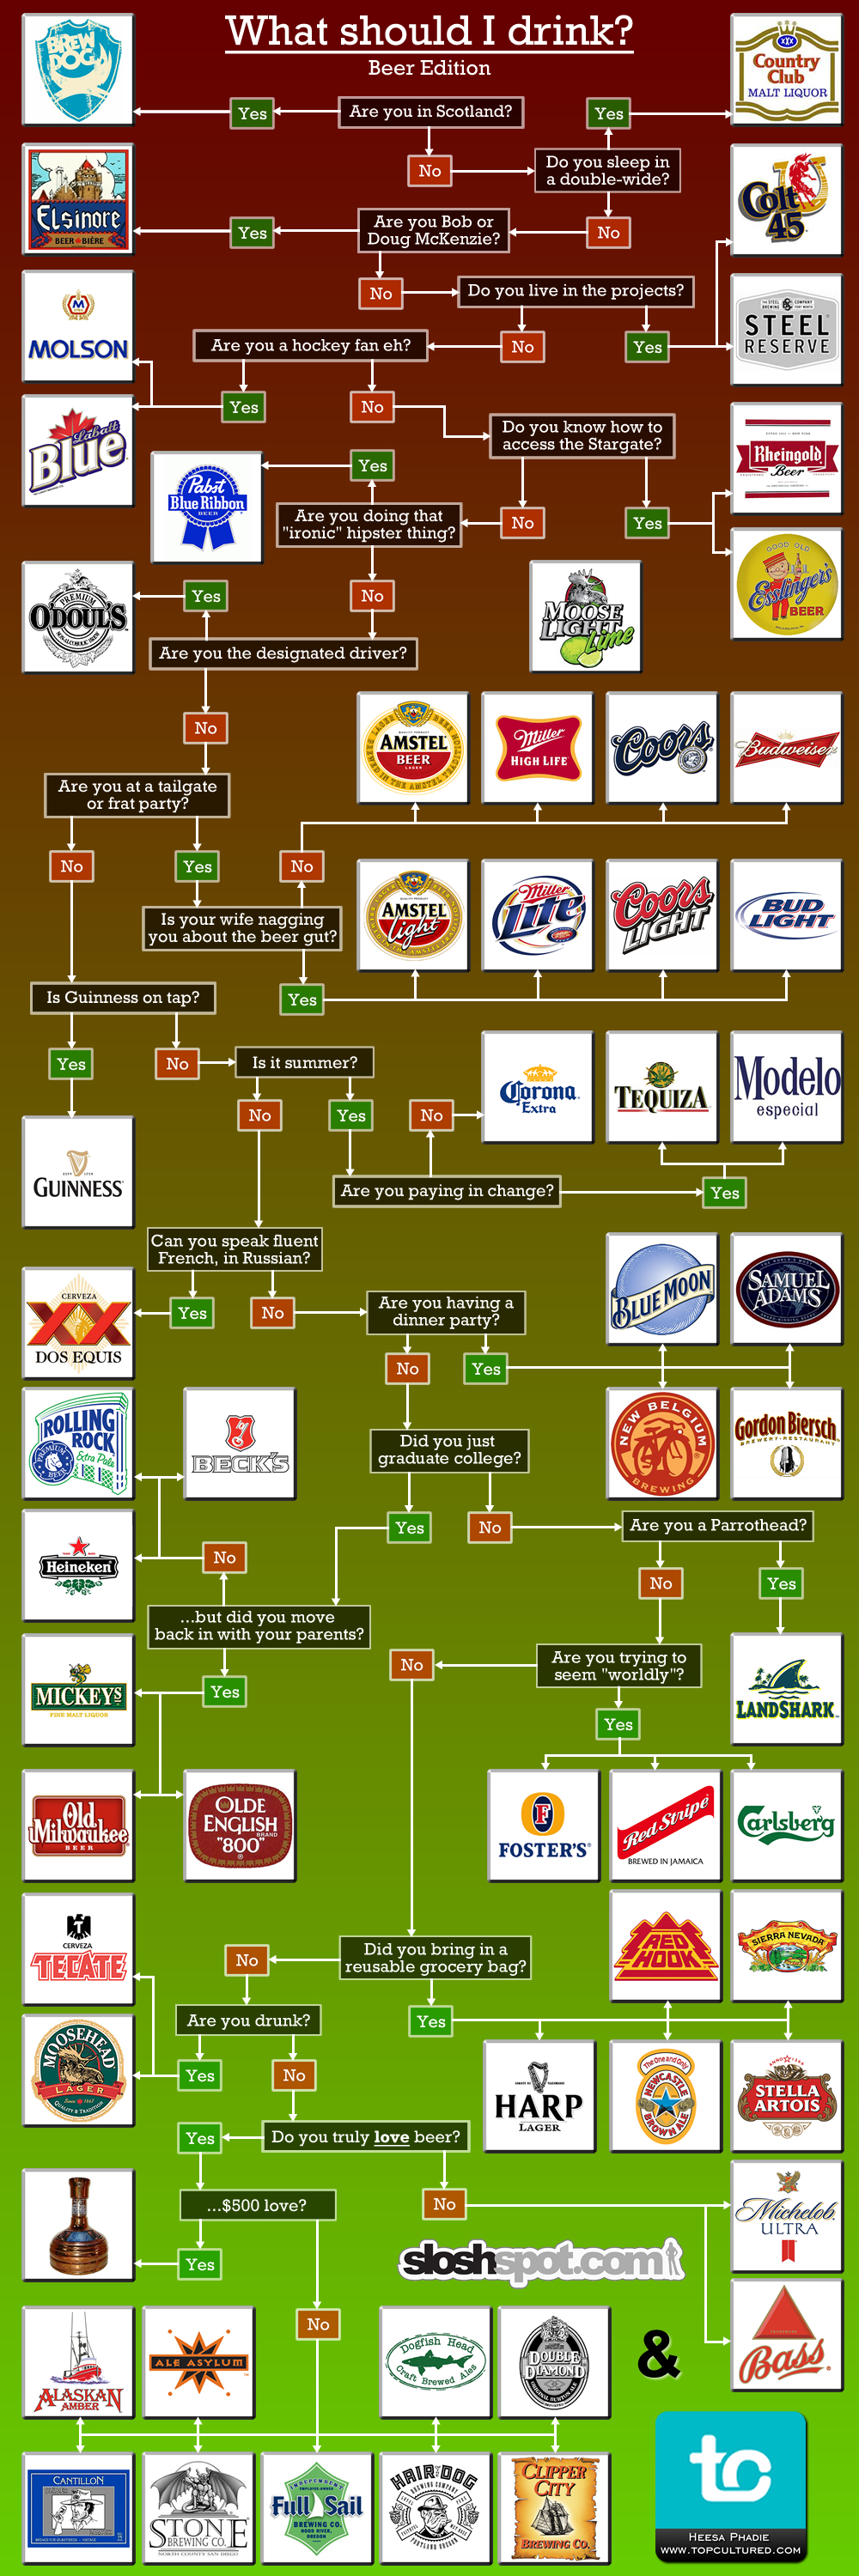 What-Should-I-Drink-Beer